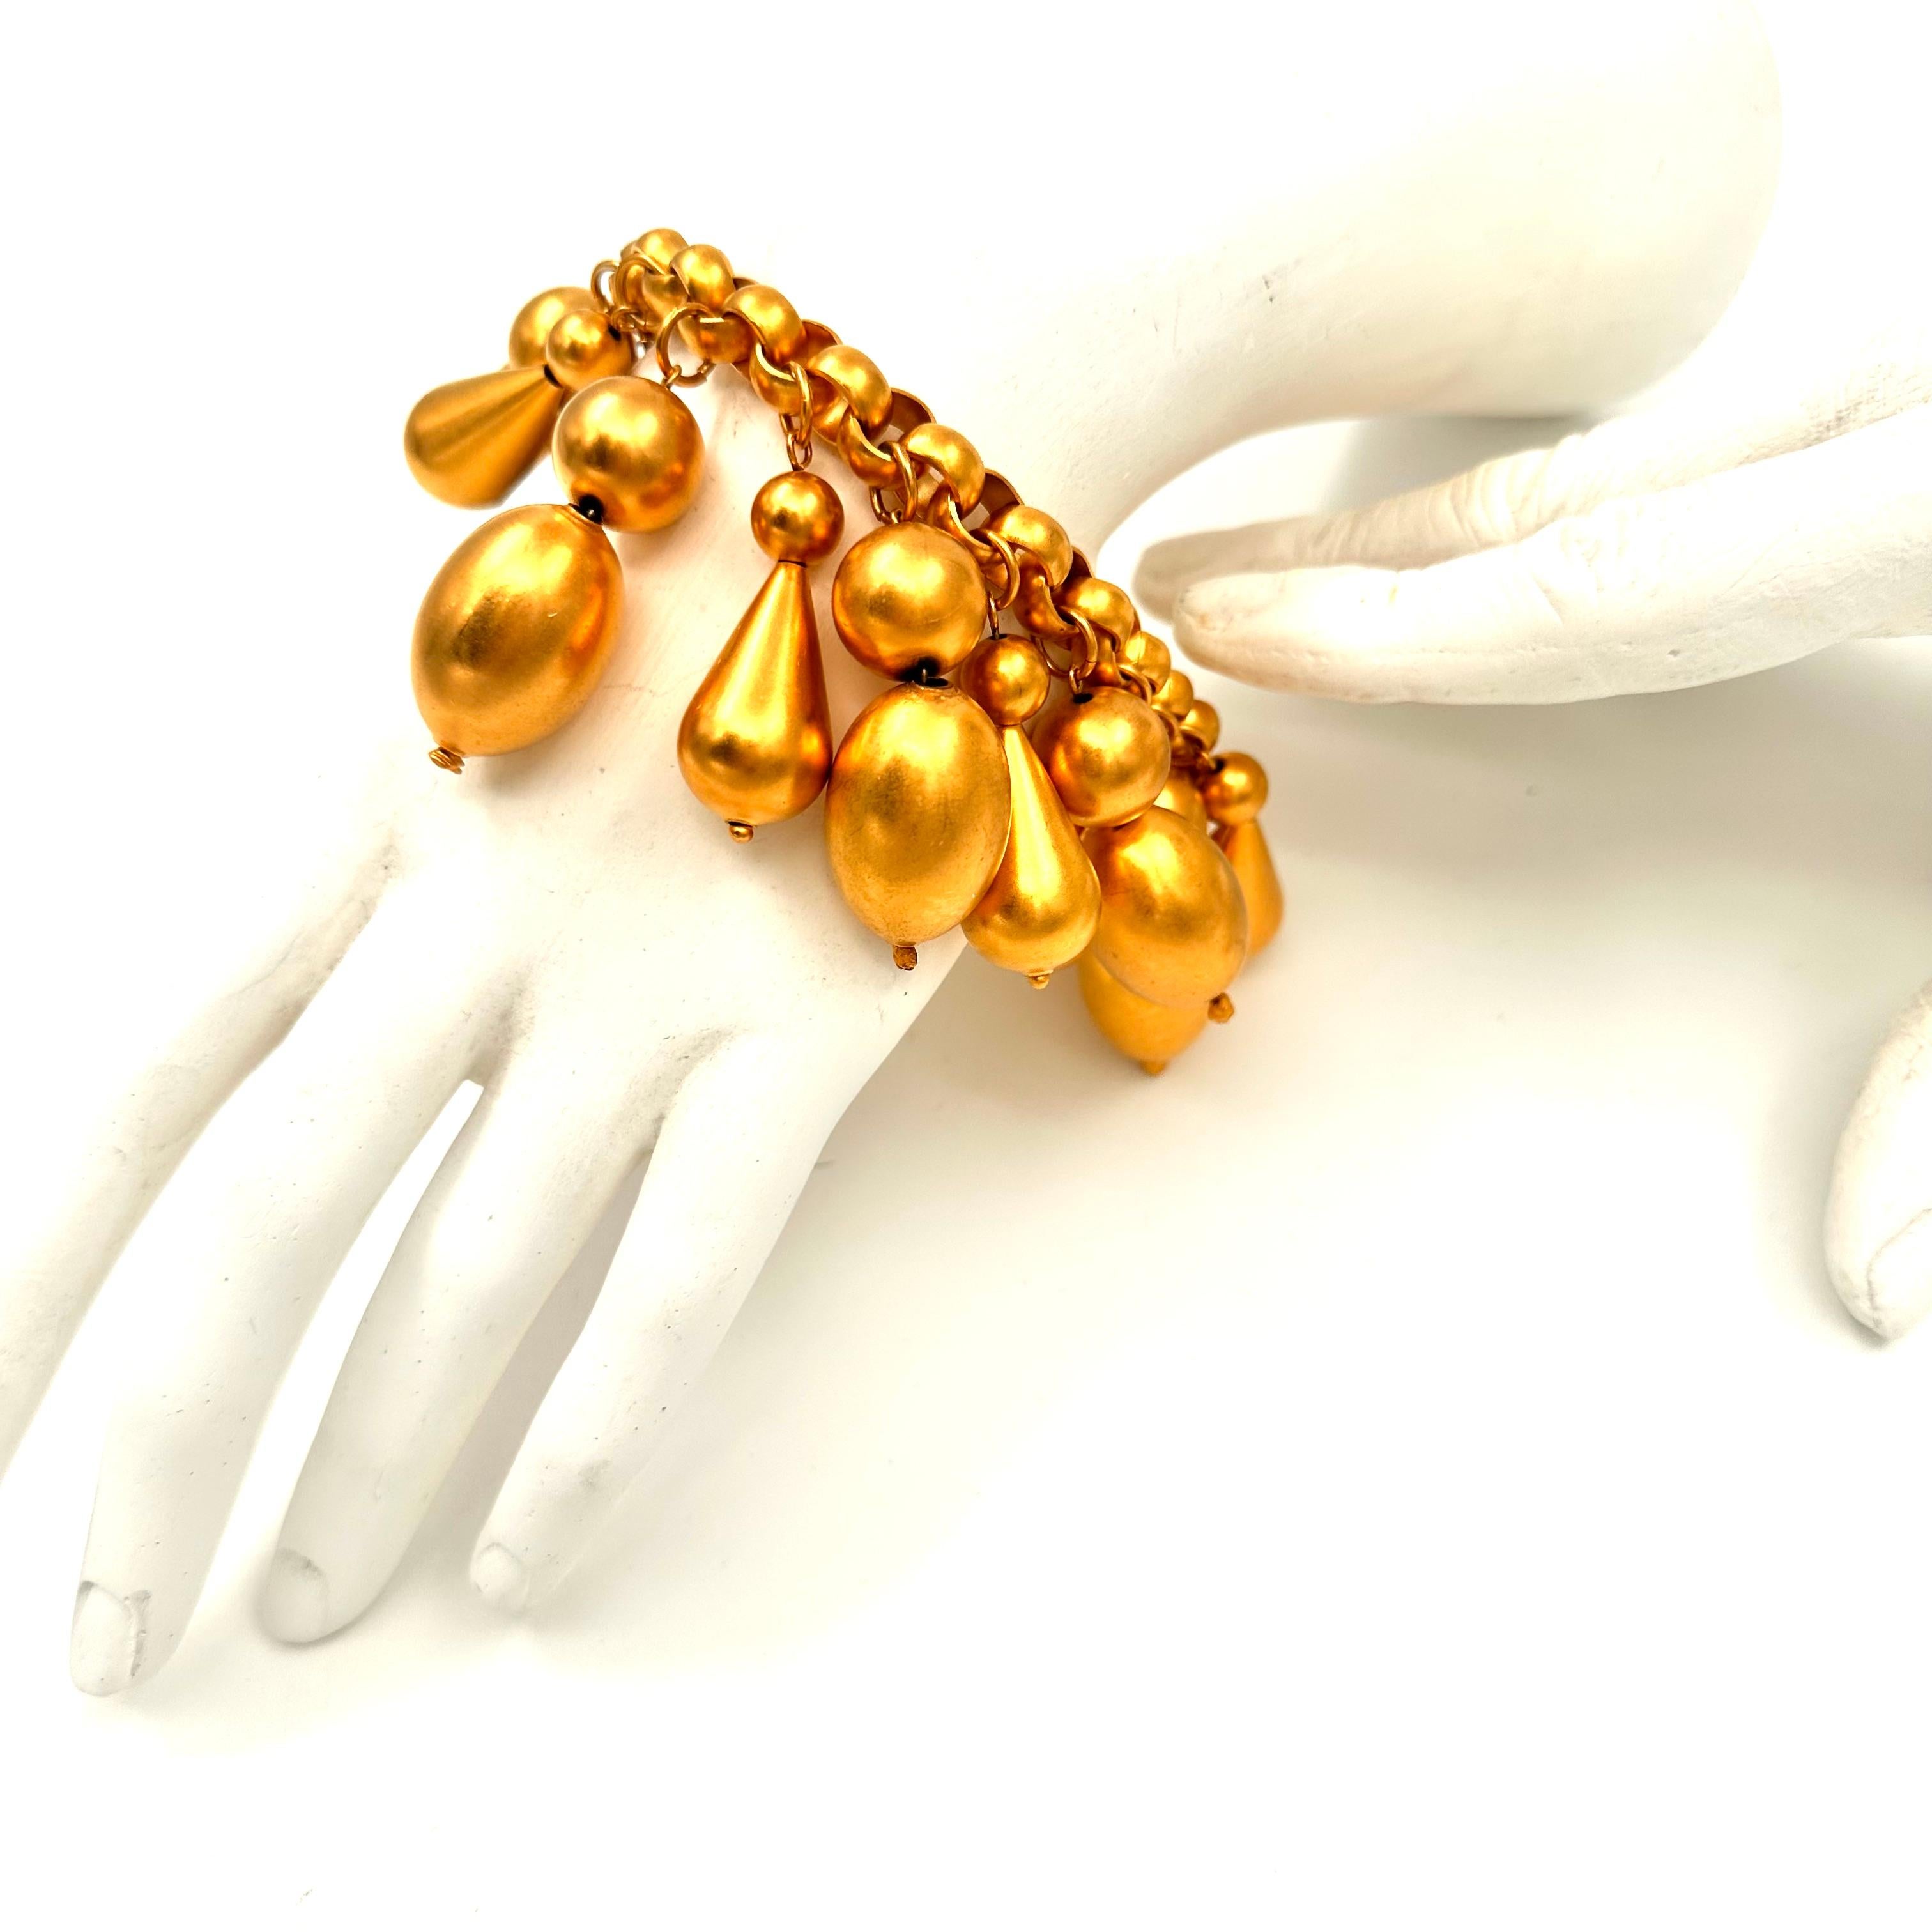 Robert Lee Morris Runway Collection All Gold Charm Armband für Donna Karan, kreiert für eine Resort Show im Jahr 1987. Diese spektakuläre Laufstegkugel, ist ein Spritzer von Gold Blasen, groß und baumelnd von einer breiten Rolle Kette Armband. die